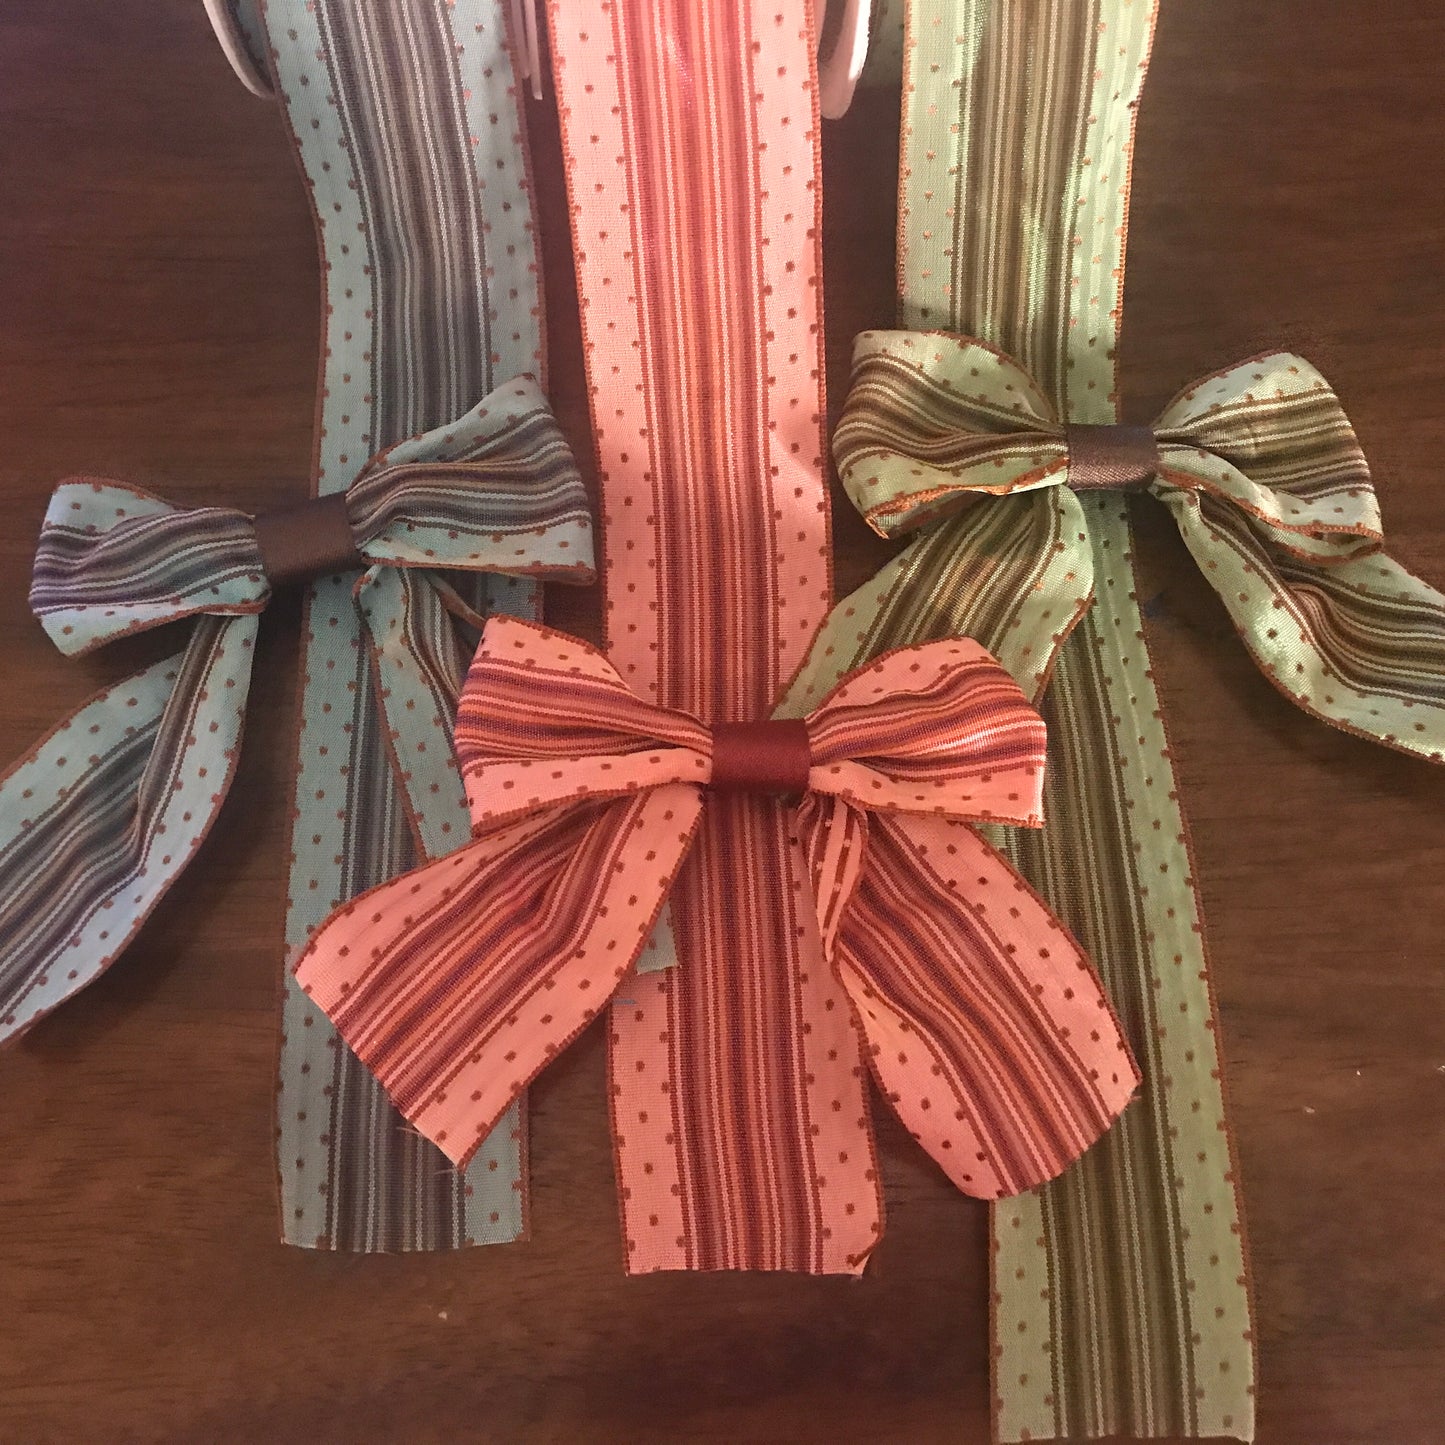 Handmade Bows and Ribbons 3 Sets Craft Kits